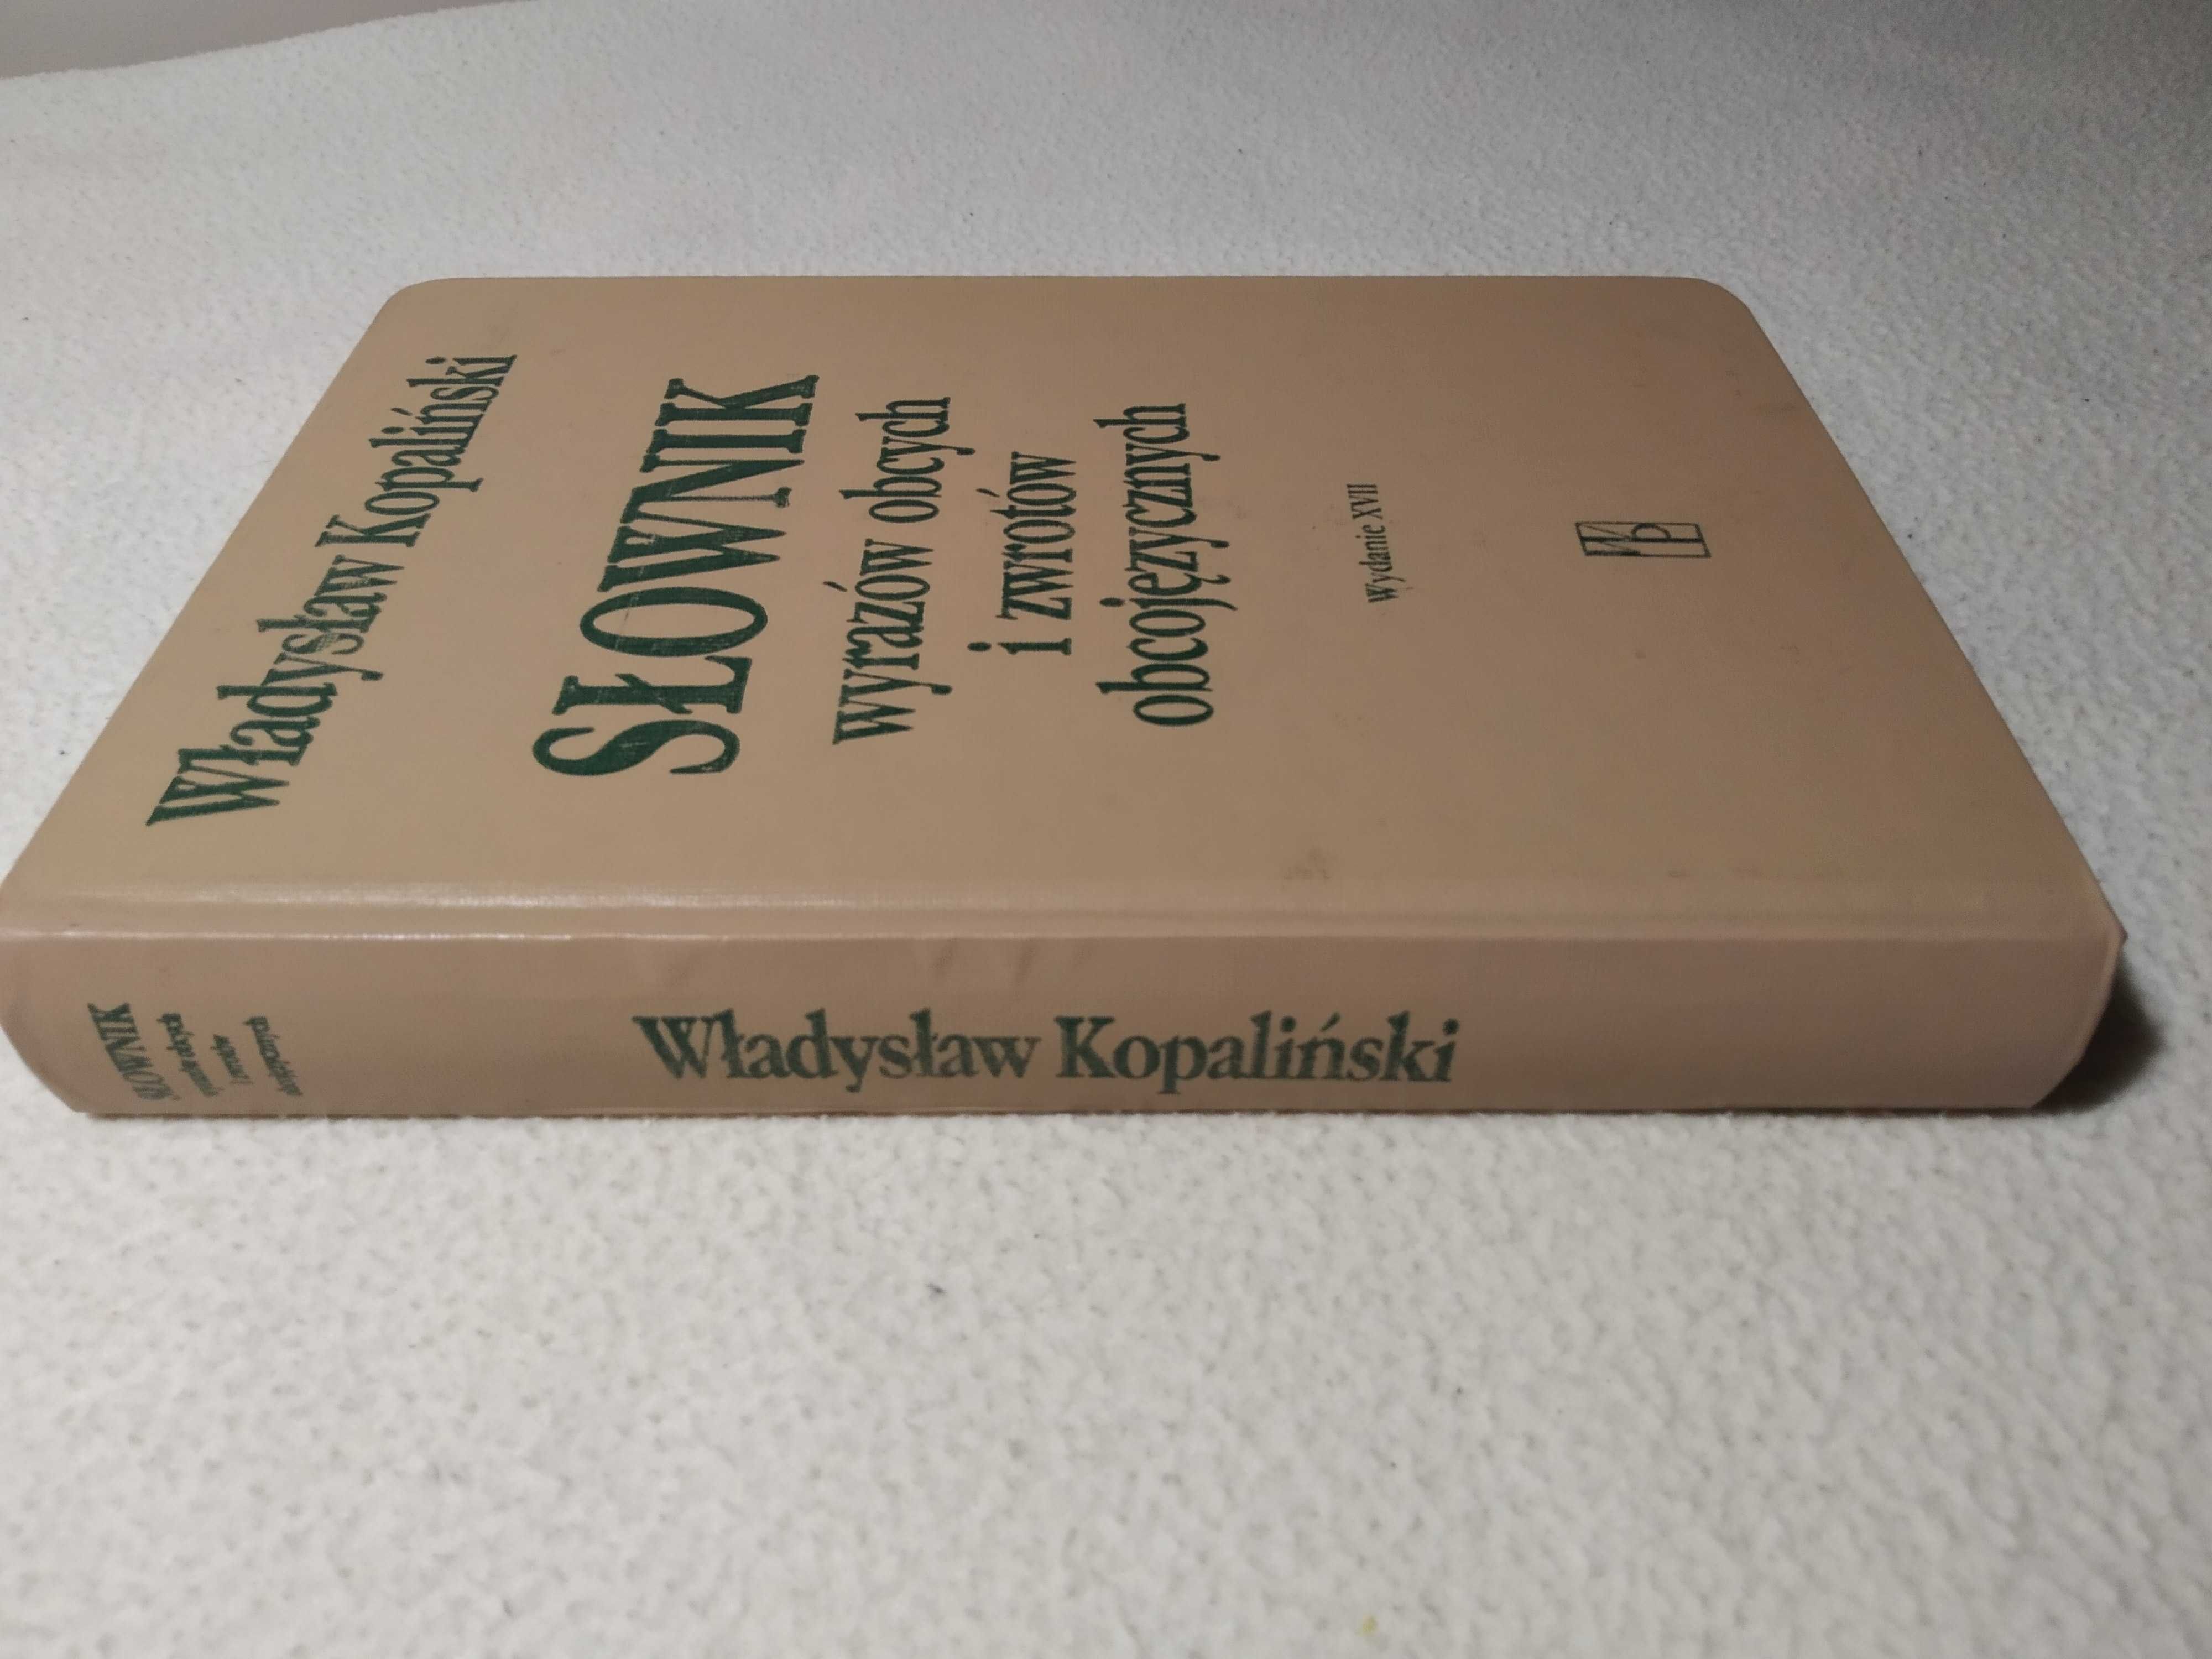 Słownik wyrazów obcych i zwrotów obcojęzycznych, Władysław Kopaliński.